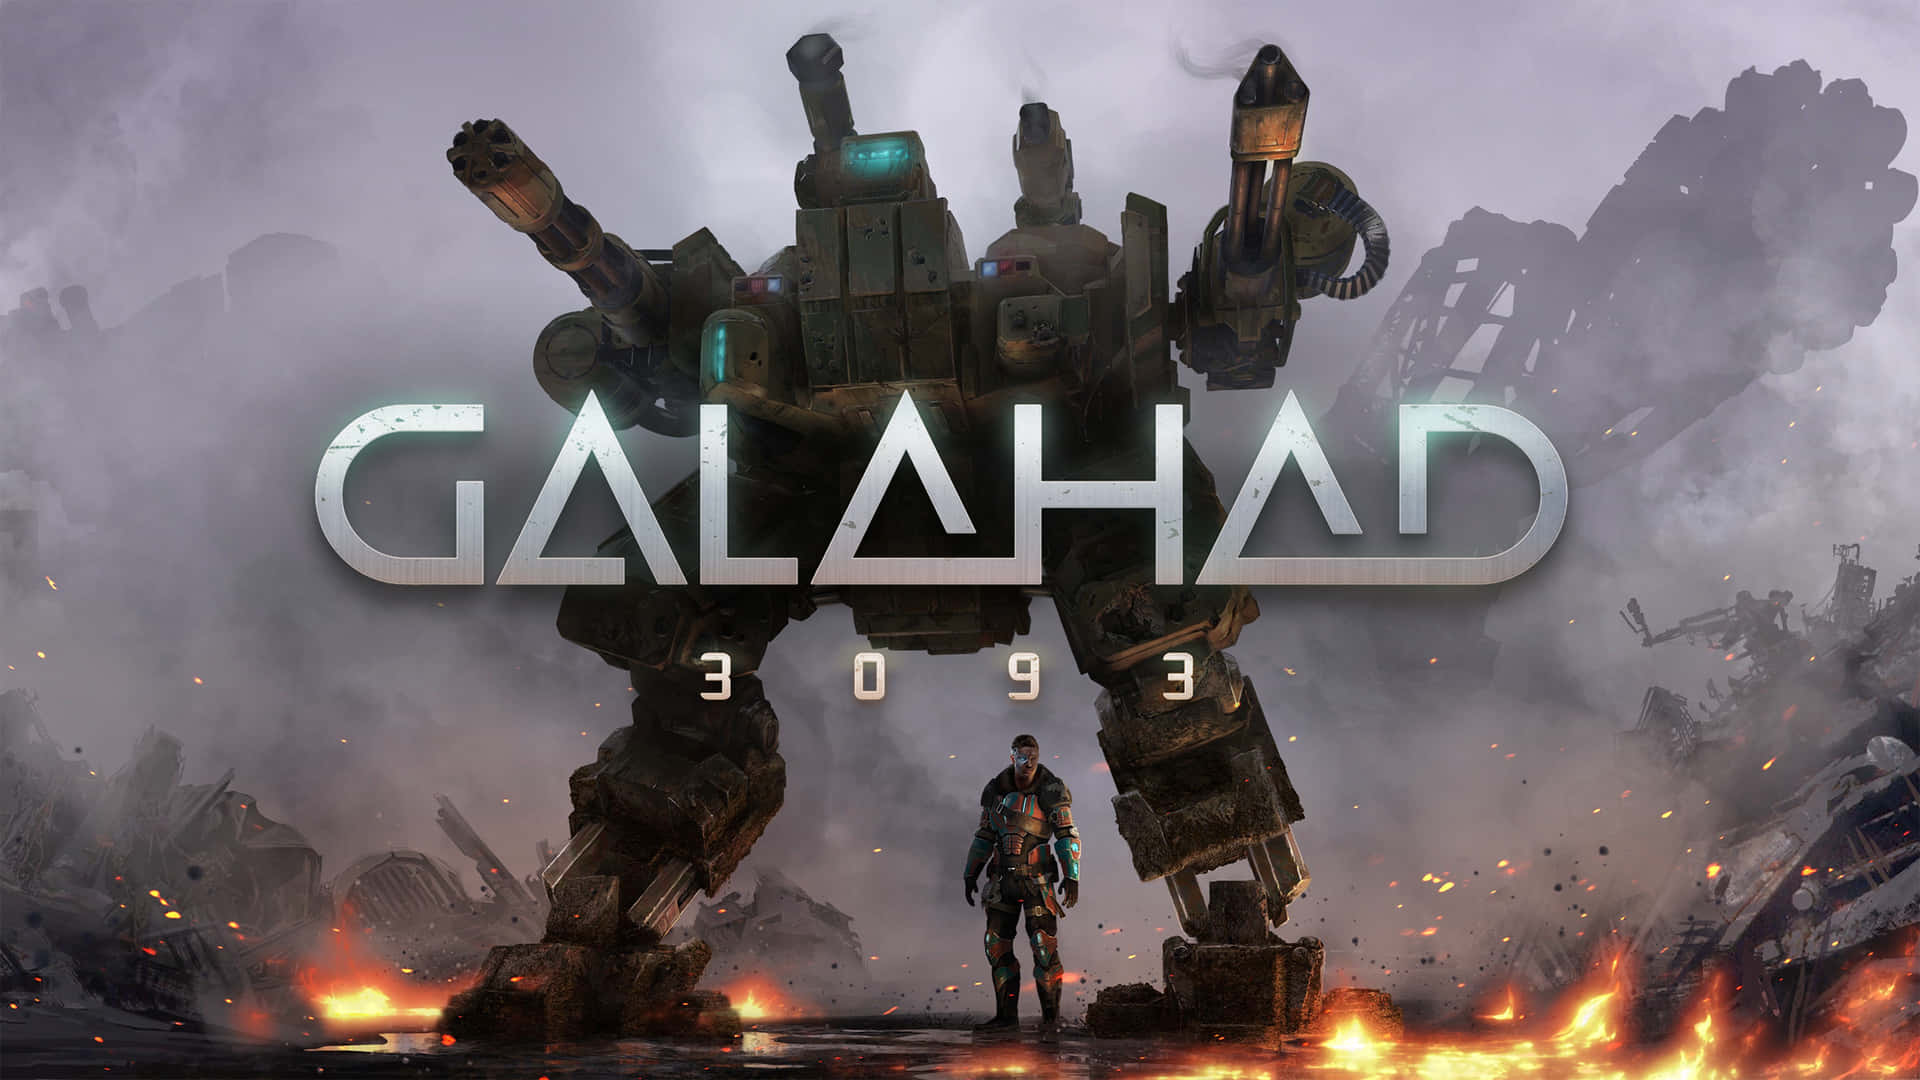 Galahad 3 - Pc - Pc Game Wallpaper